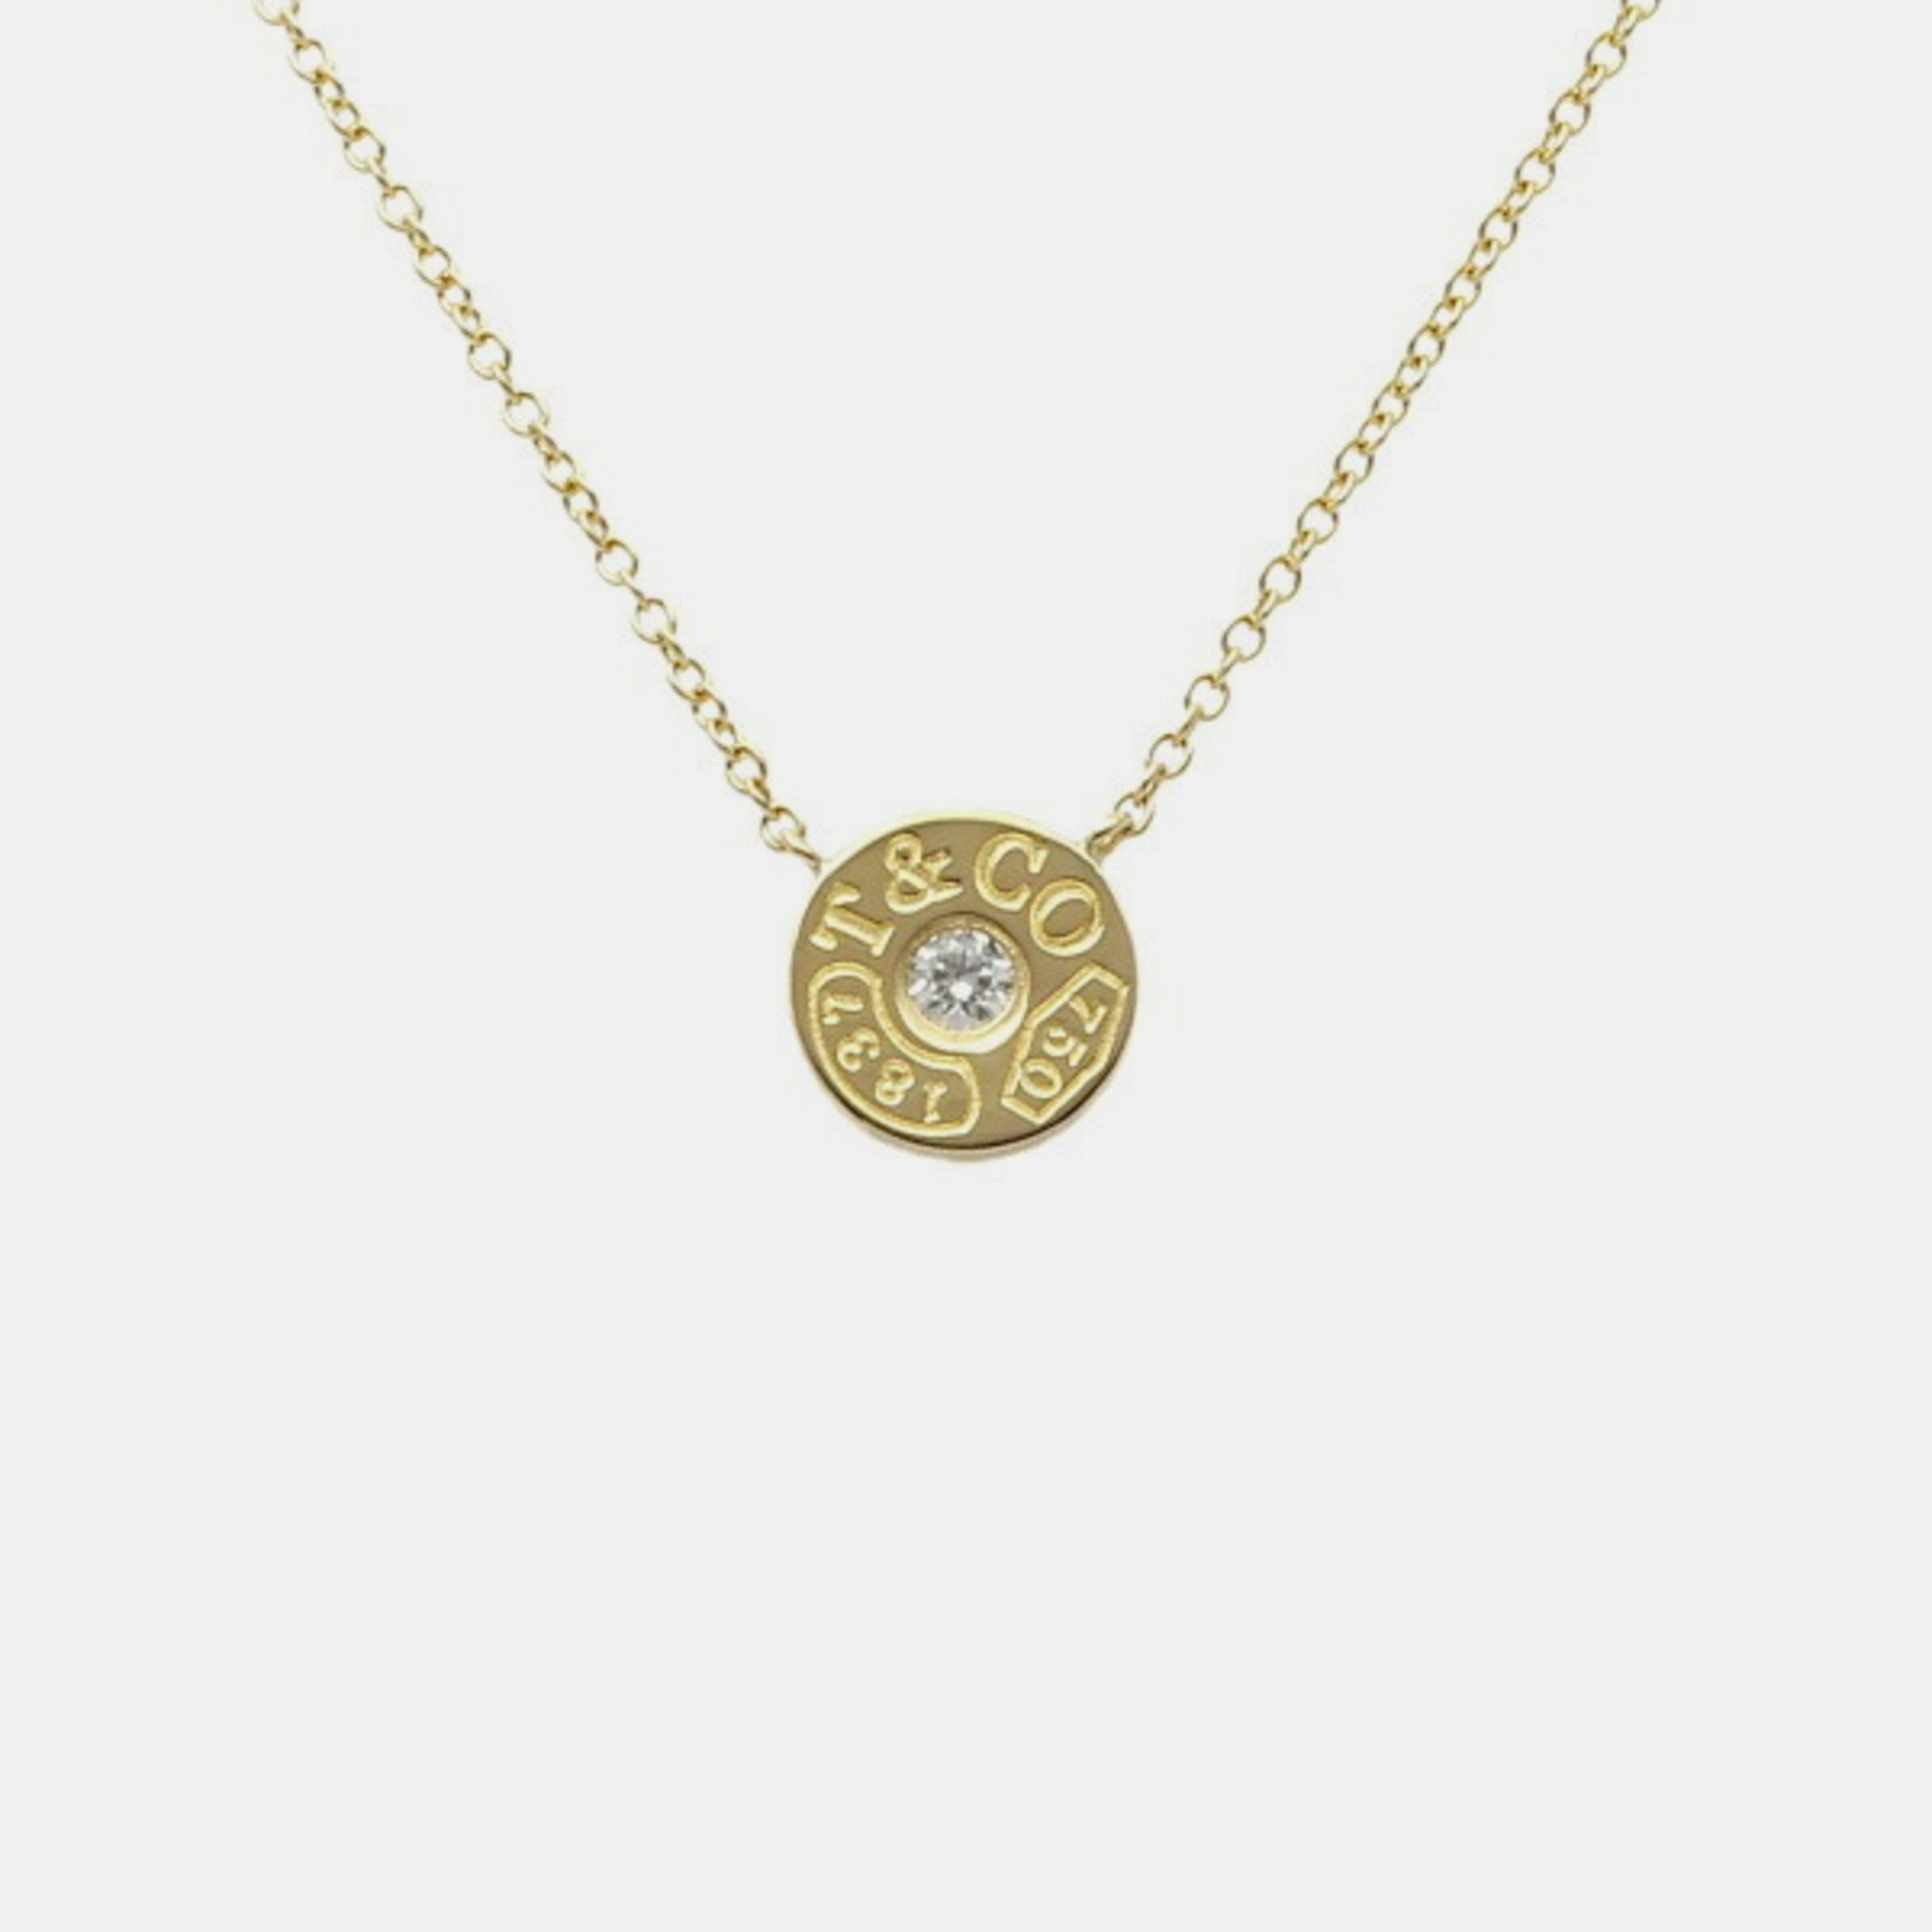 Tiffany & Co. Tiffany 1837 18K Yellow Gold Diamond Necklace